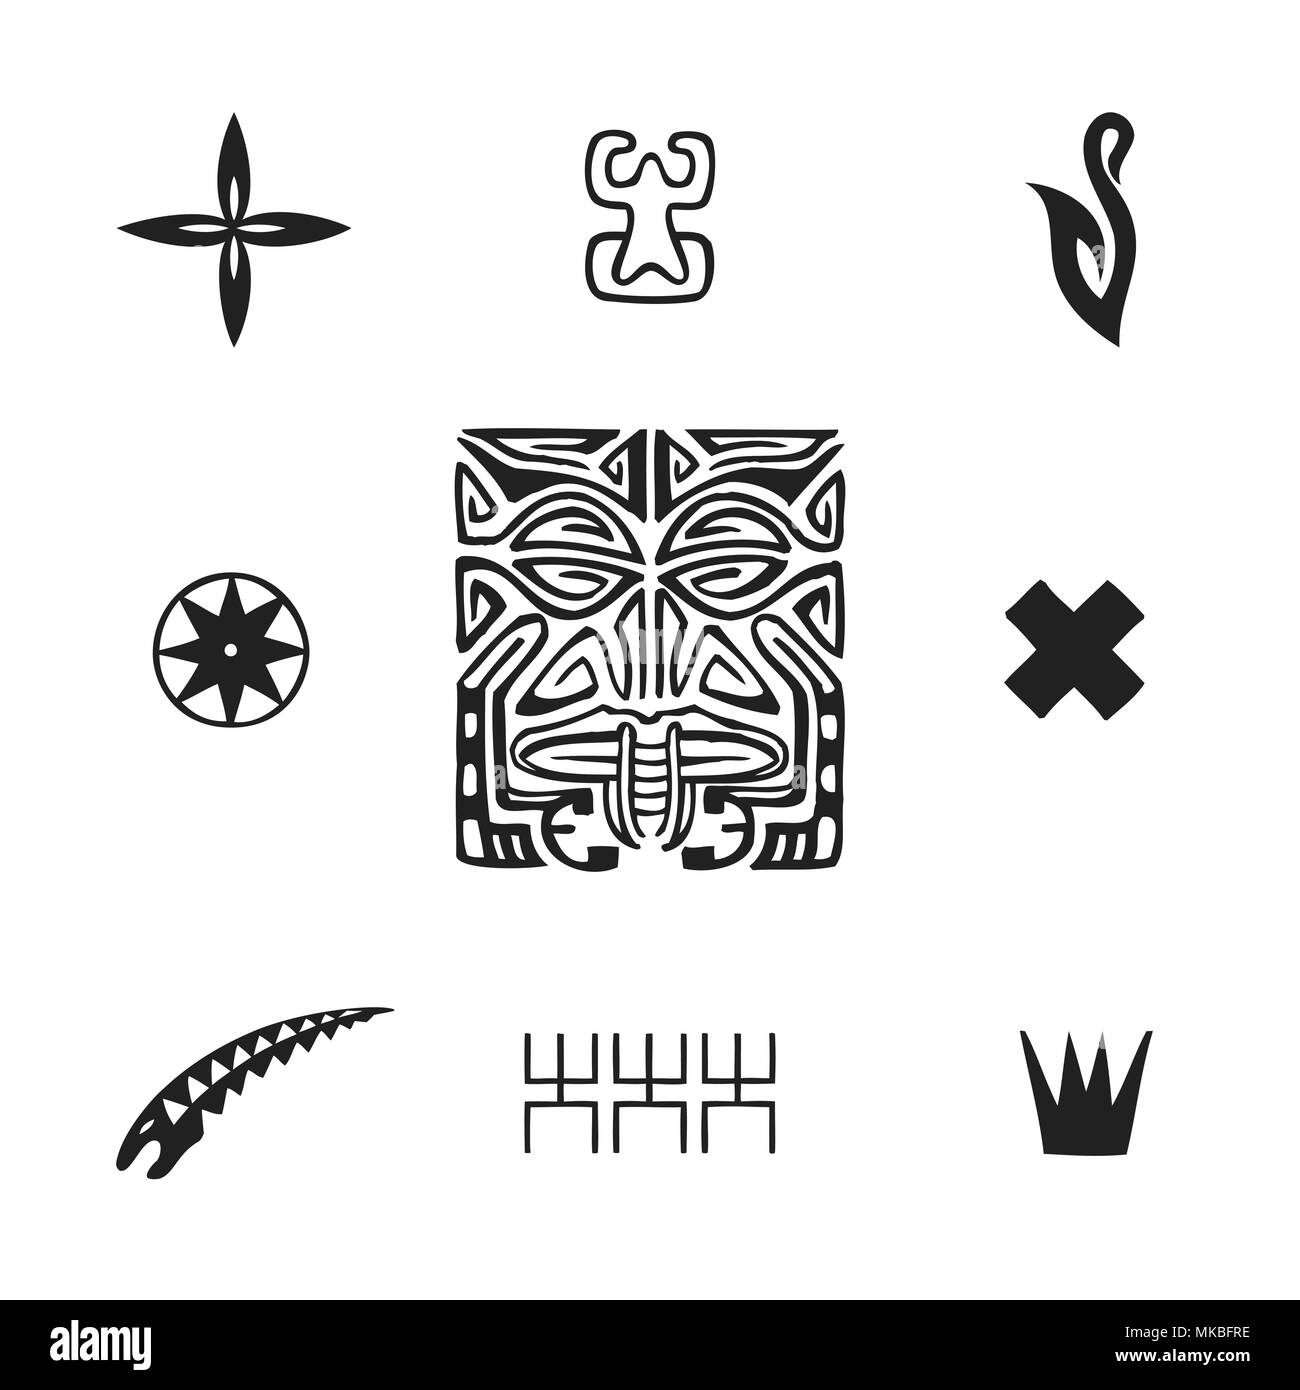 Vector nero inchiostro monocromatico disegnati a mano polinesiano autentico folk art simboli Tiki, tapa fiore, Enata, pesce gancio, Puahitu, bussola, murene, Kena warri Illustrazione Vettoriale